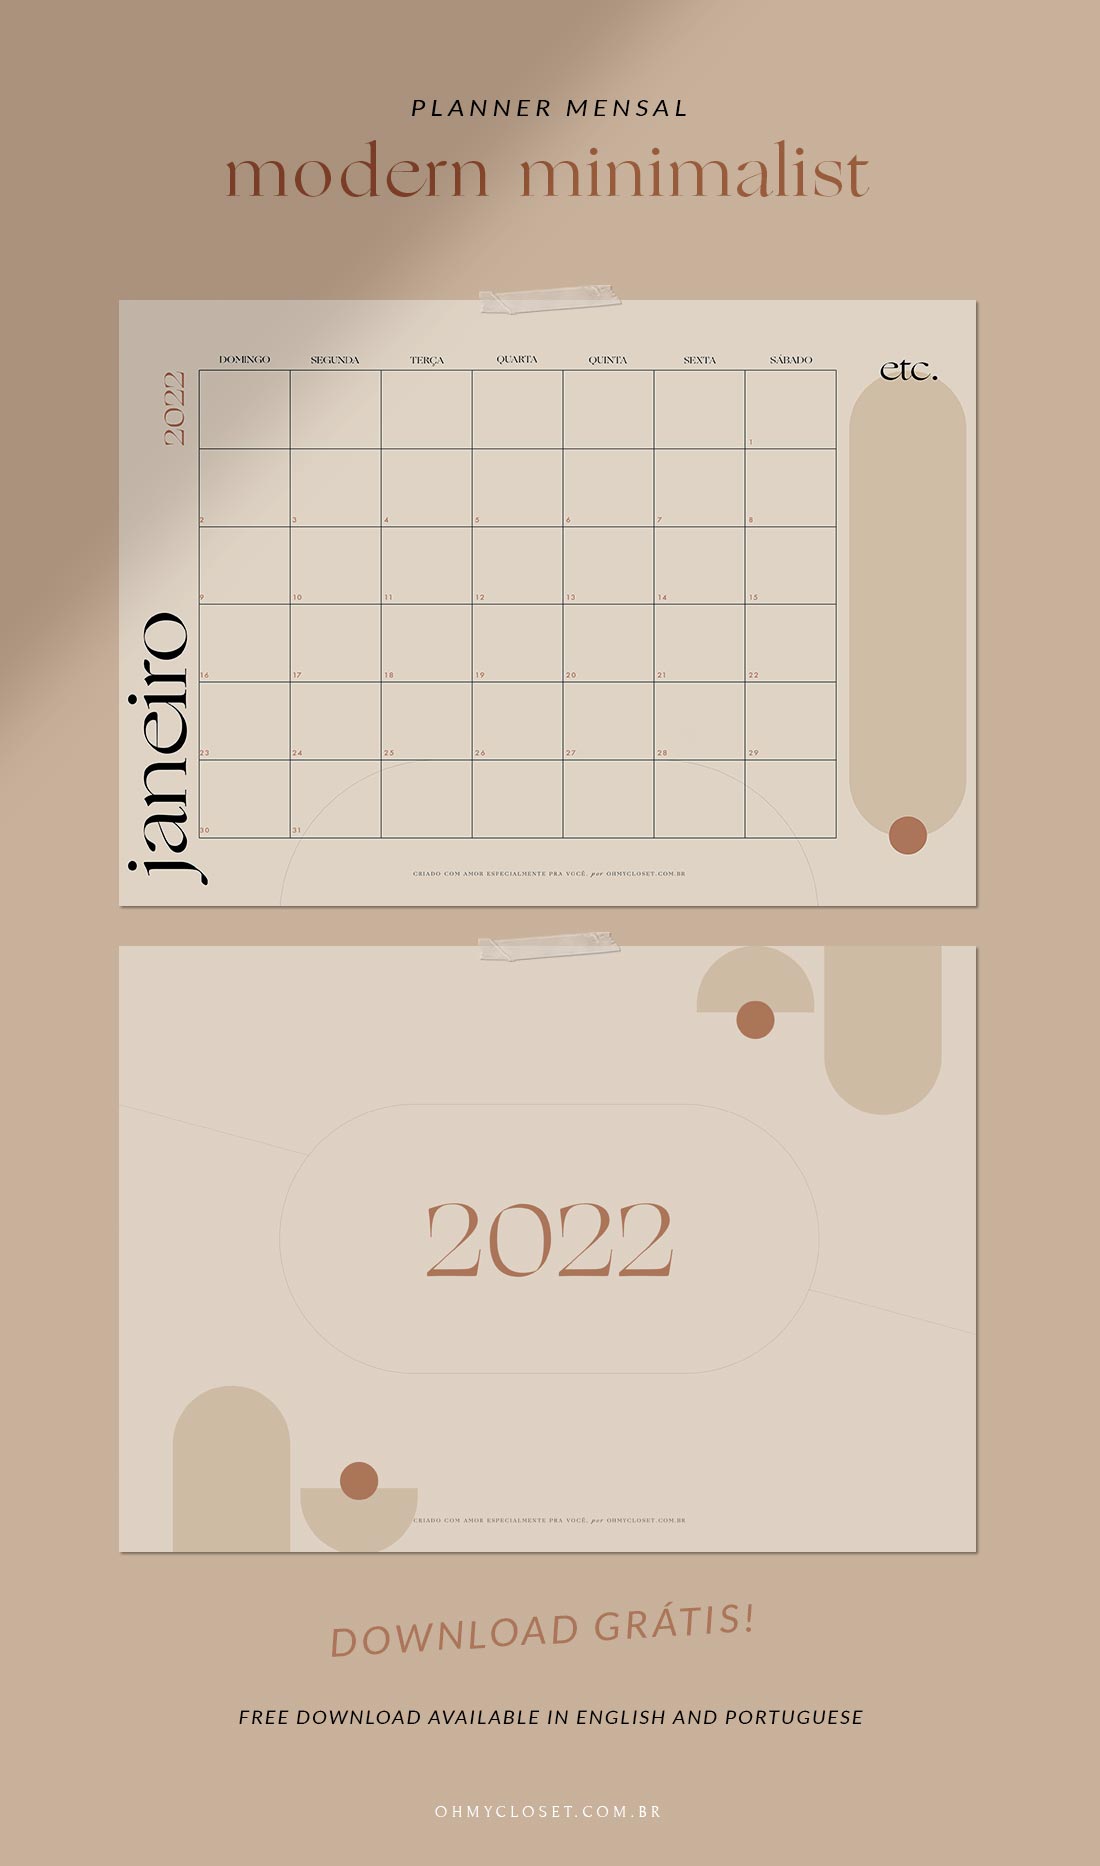 Planner mensal modern minimalist 2022 download grátis.